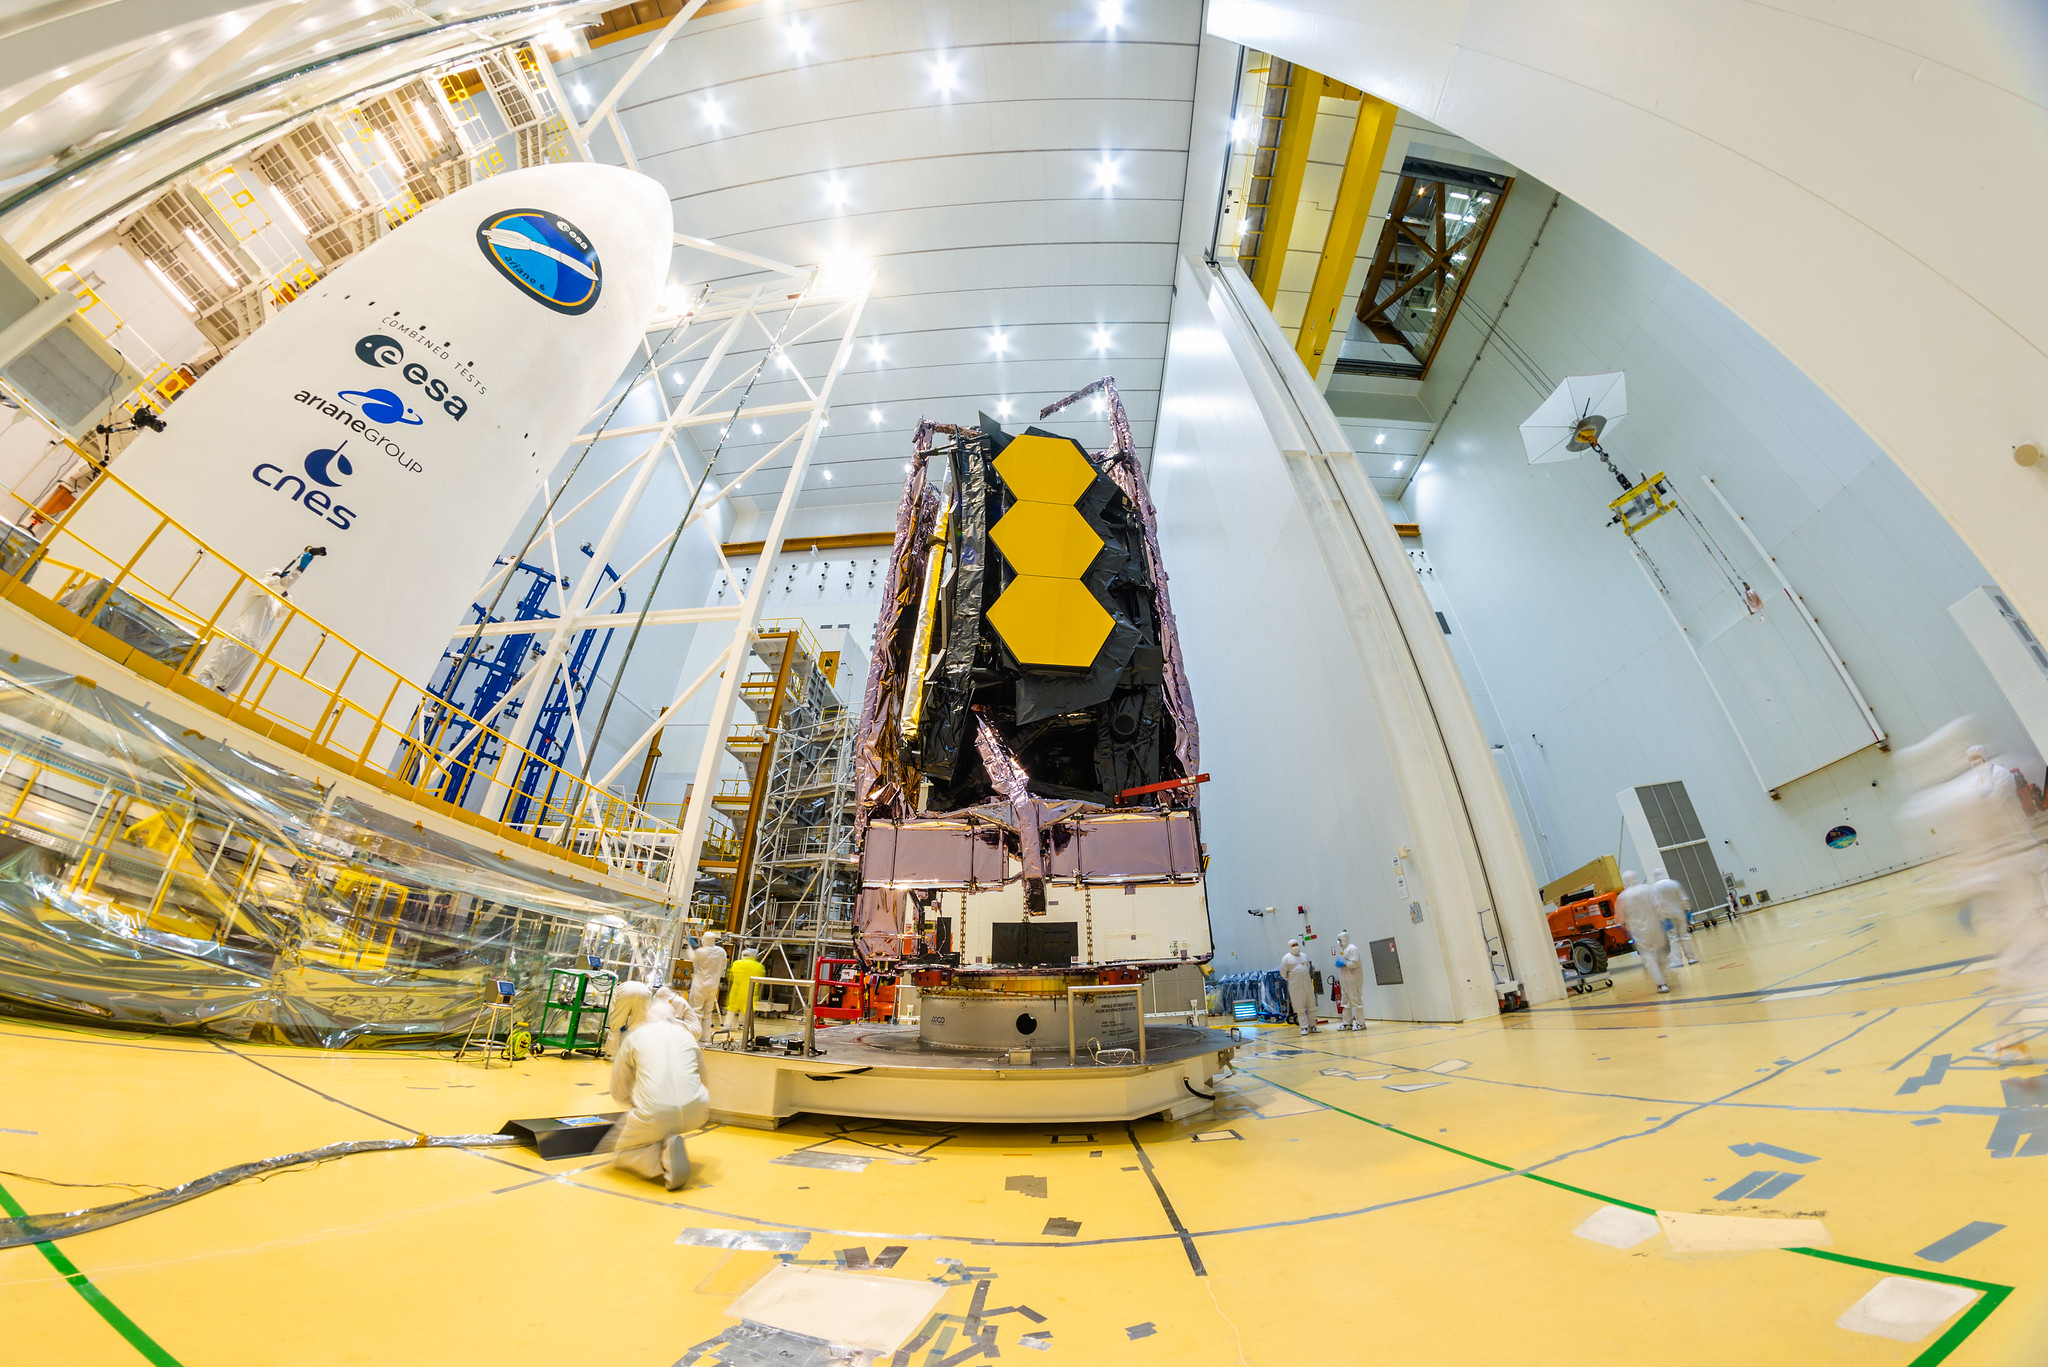 Sabato 11 dicembre, il James Webb Space Telescope della NASA è stato avvistato in cima a un razzo Ariane 5 lanciato nello spazio dallo spazioporto europeo nella Guyana francese.